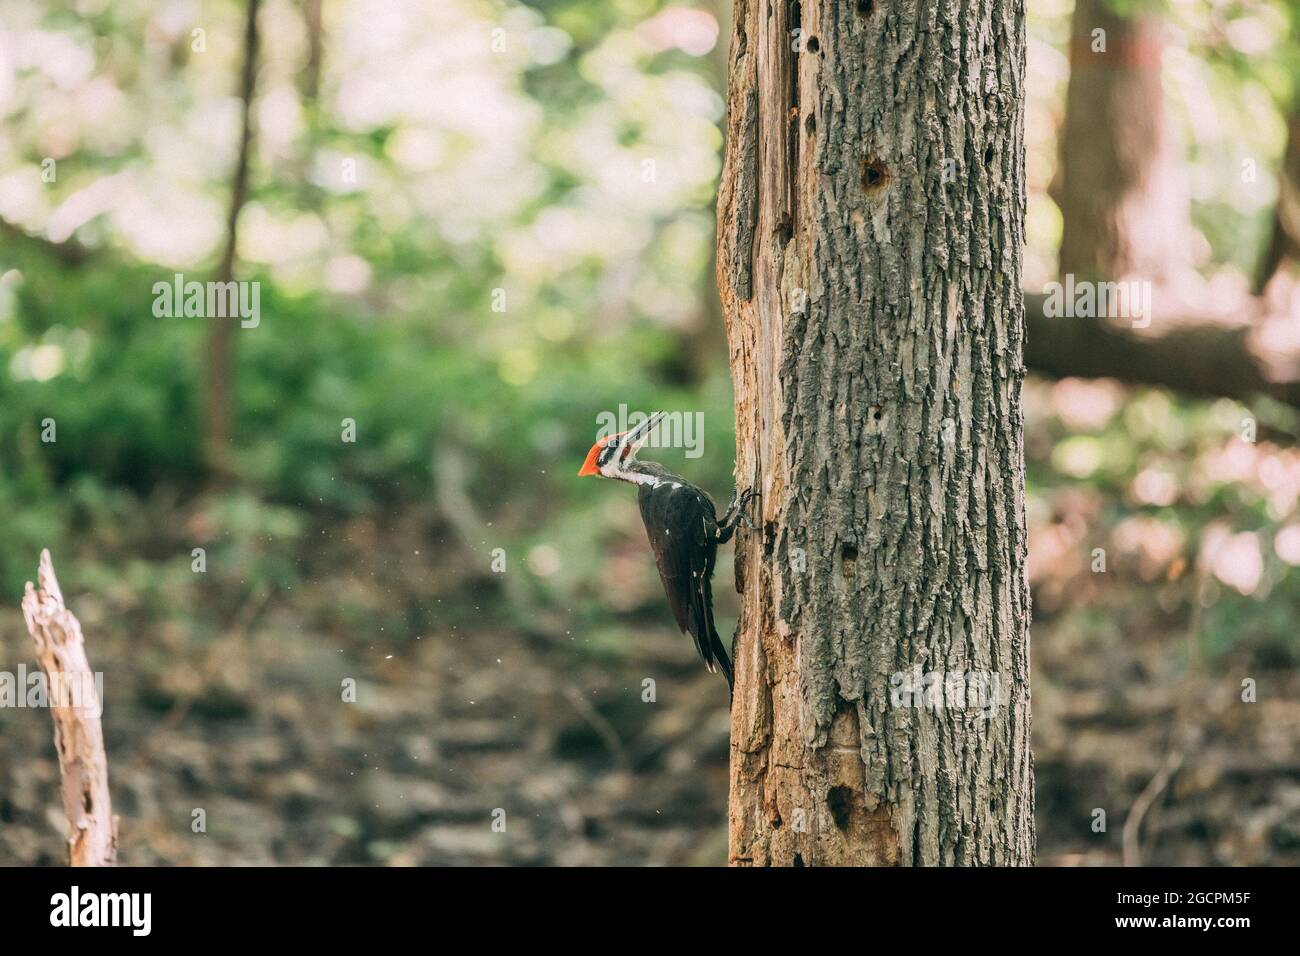 Pileated Specht whacking toten Baumstamm auf der Suche nach Insekten Essen in Löchern in Holz Wald Banner Hintergrund. Männlicher Vogel einer der größten Wälder Stockfoto